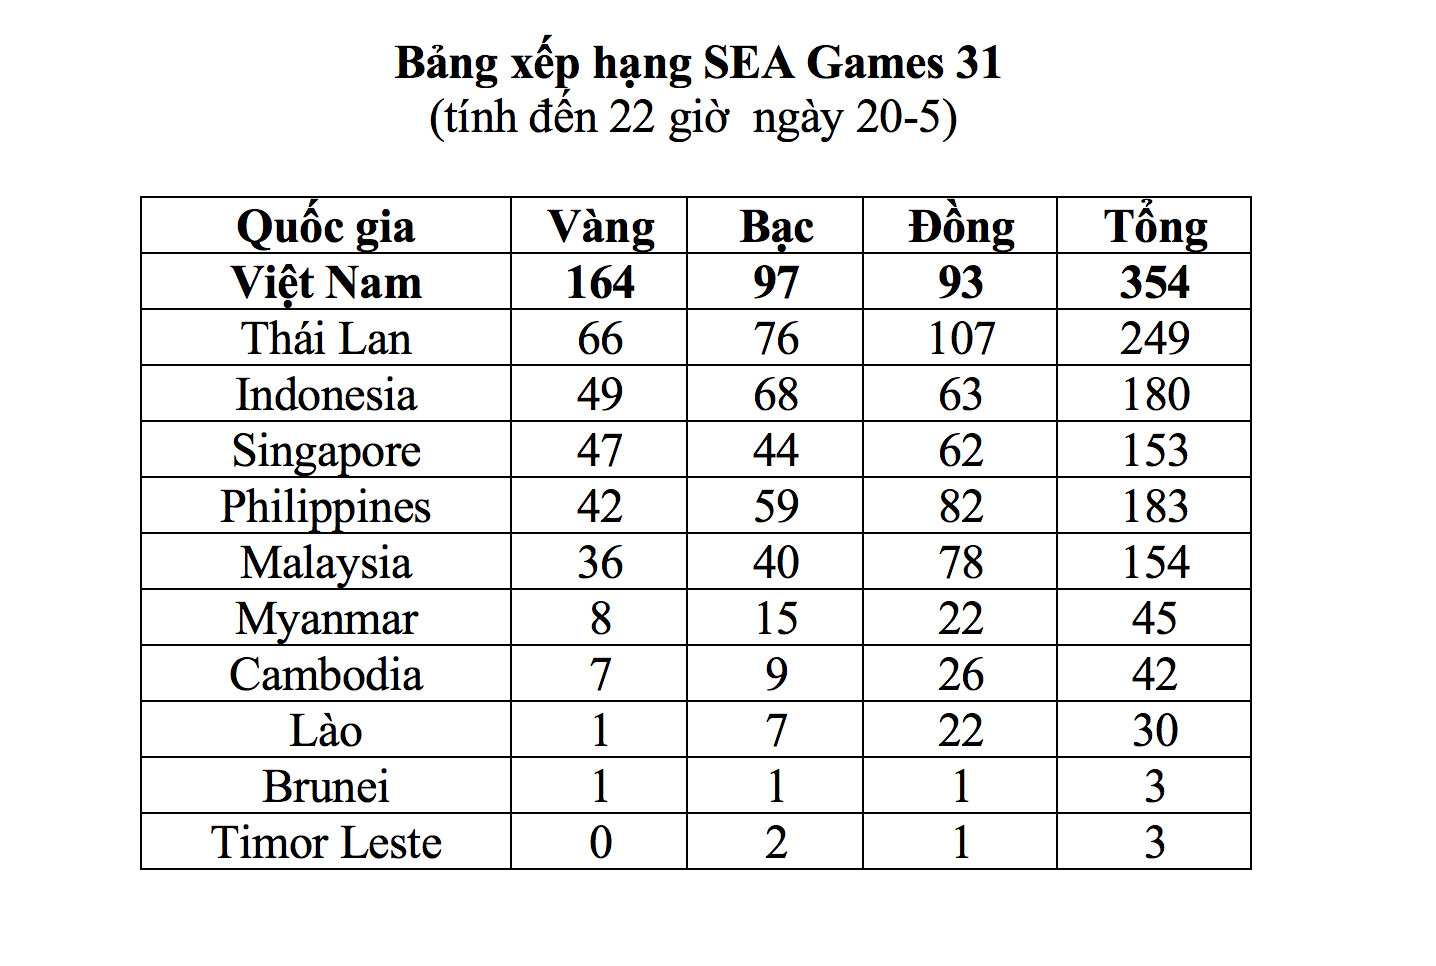 Nhật ký SEA Games 31 ngày 21-5: Bóng đá nữ lên ngôi, TTVN vượt xa chỉ tiêu HCV - Ảnh 32.